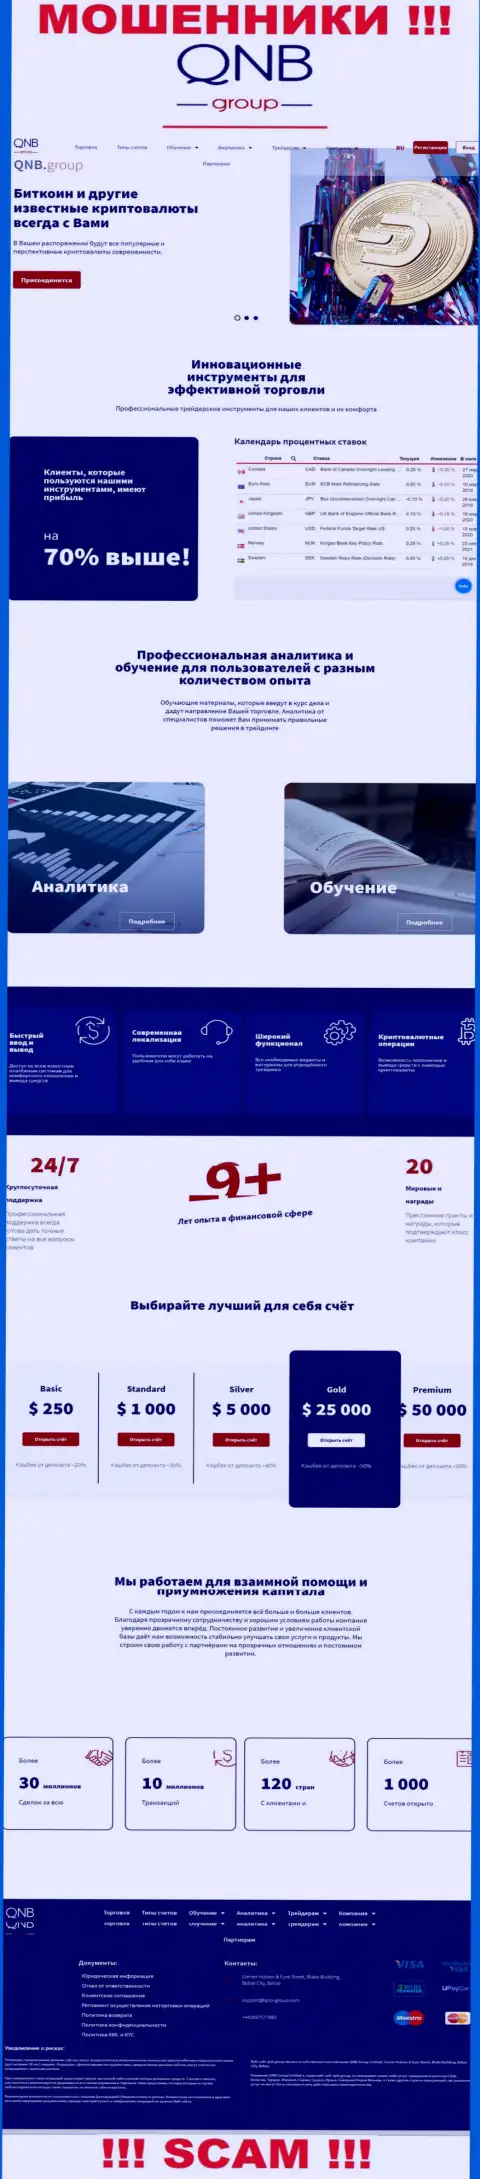 Официальный информационный портал аферистов КьюНБ Групп, заполненный материалами для наивных людей